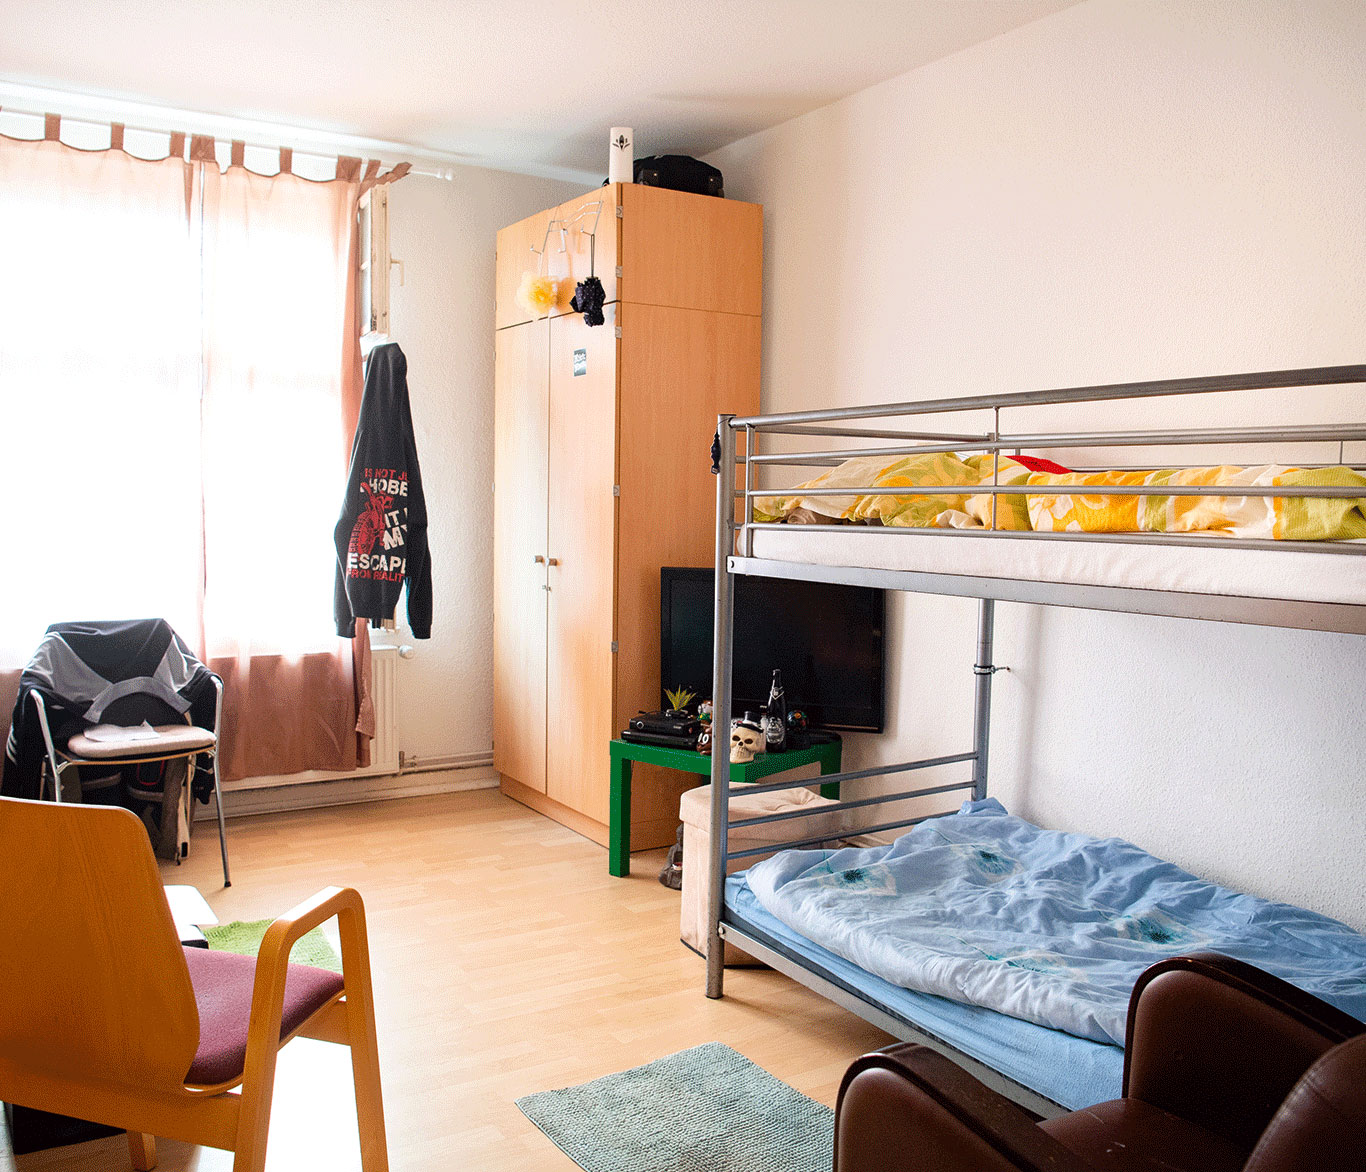 Ein Zimmer in der Notunterkunft Gundlach-Haus in Wismar.